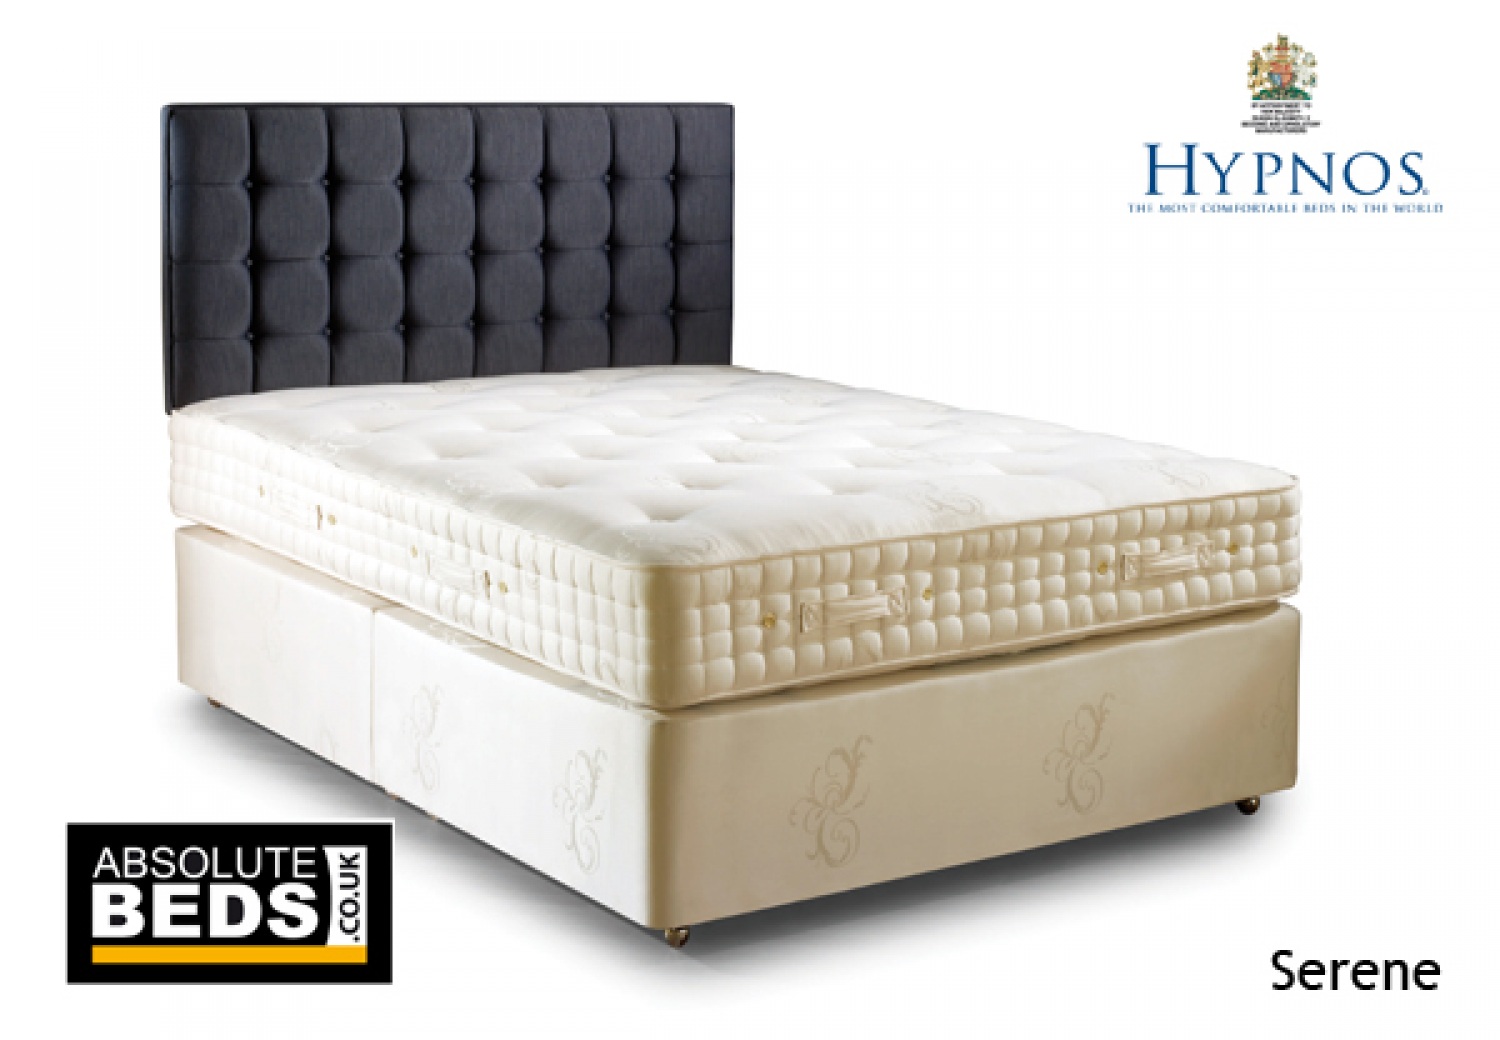 Hypnos Serene 1500 Pocket Sprung Divan Bed Set image